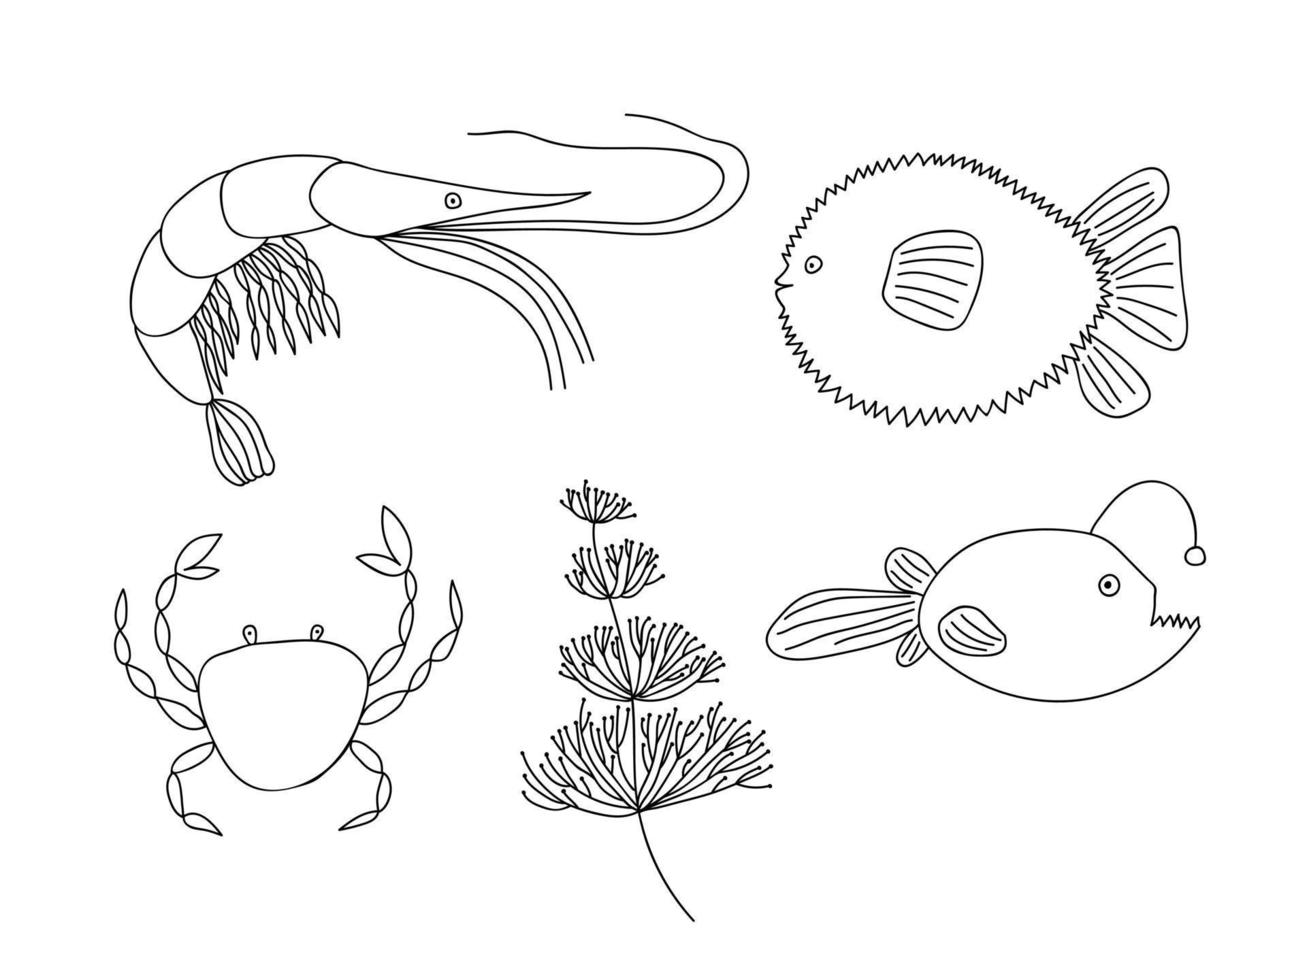 ensemble de doodle de poisson de mer vectoriel. illustration de la vie marine doodle dessinés à la main. différents types de poissons, crabes, crevettes, plantes marines. vecteur